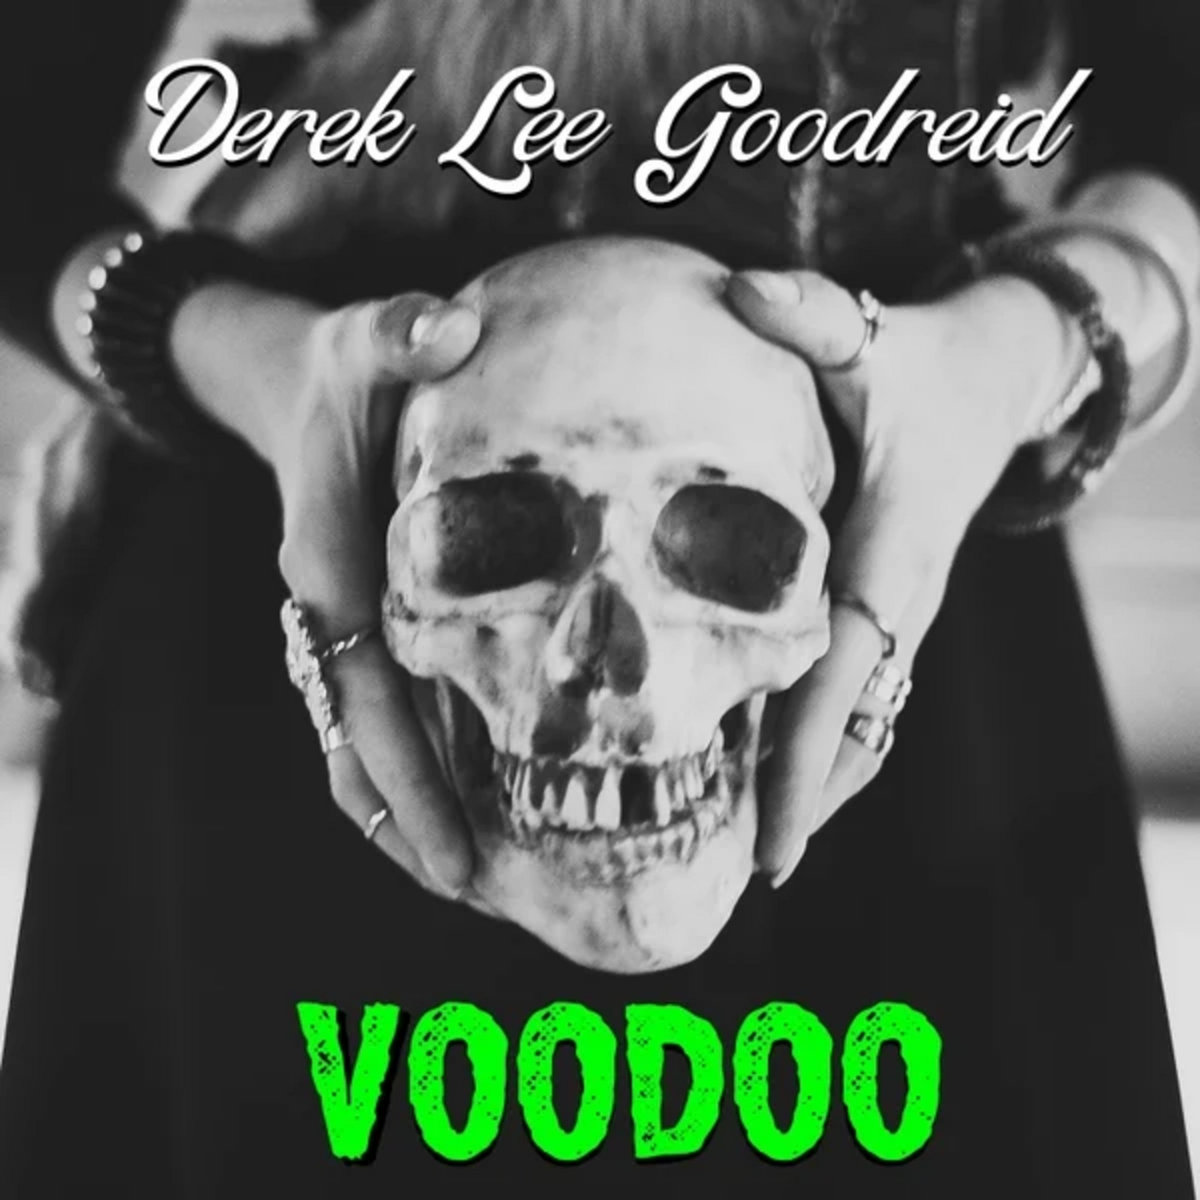 Derek Lee Goodreid – “Voodoo”